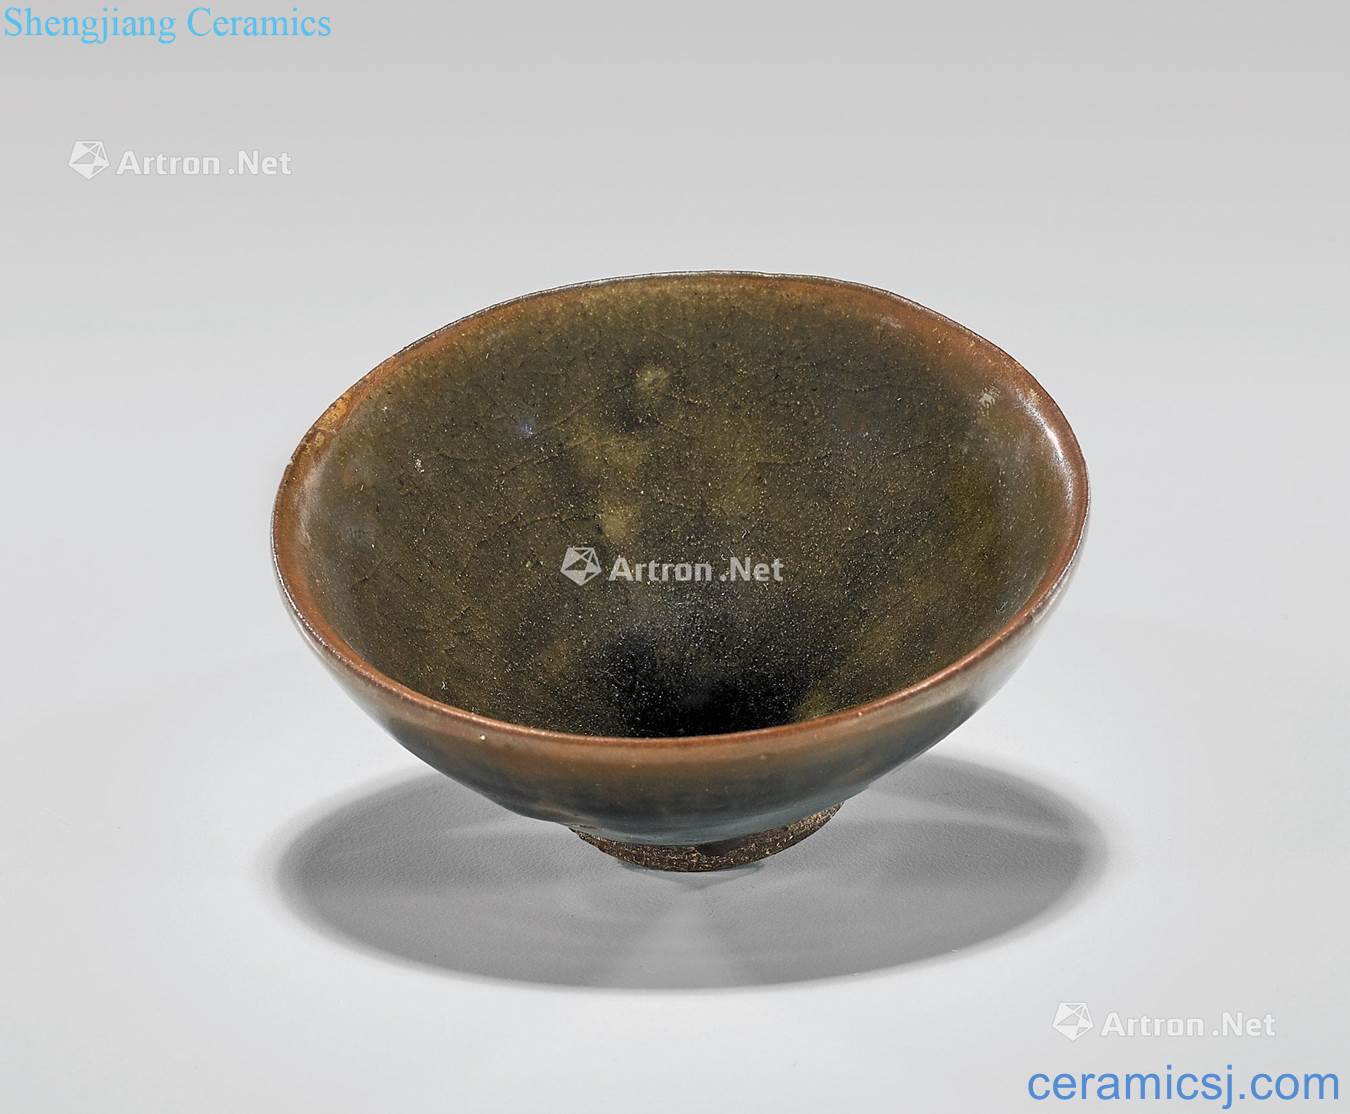 The song dynasty tea glazed pottery,